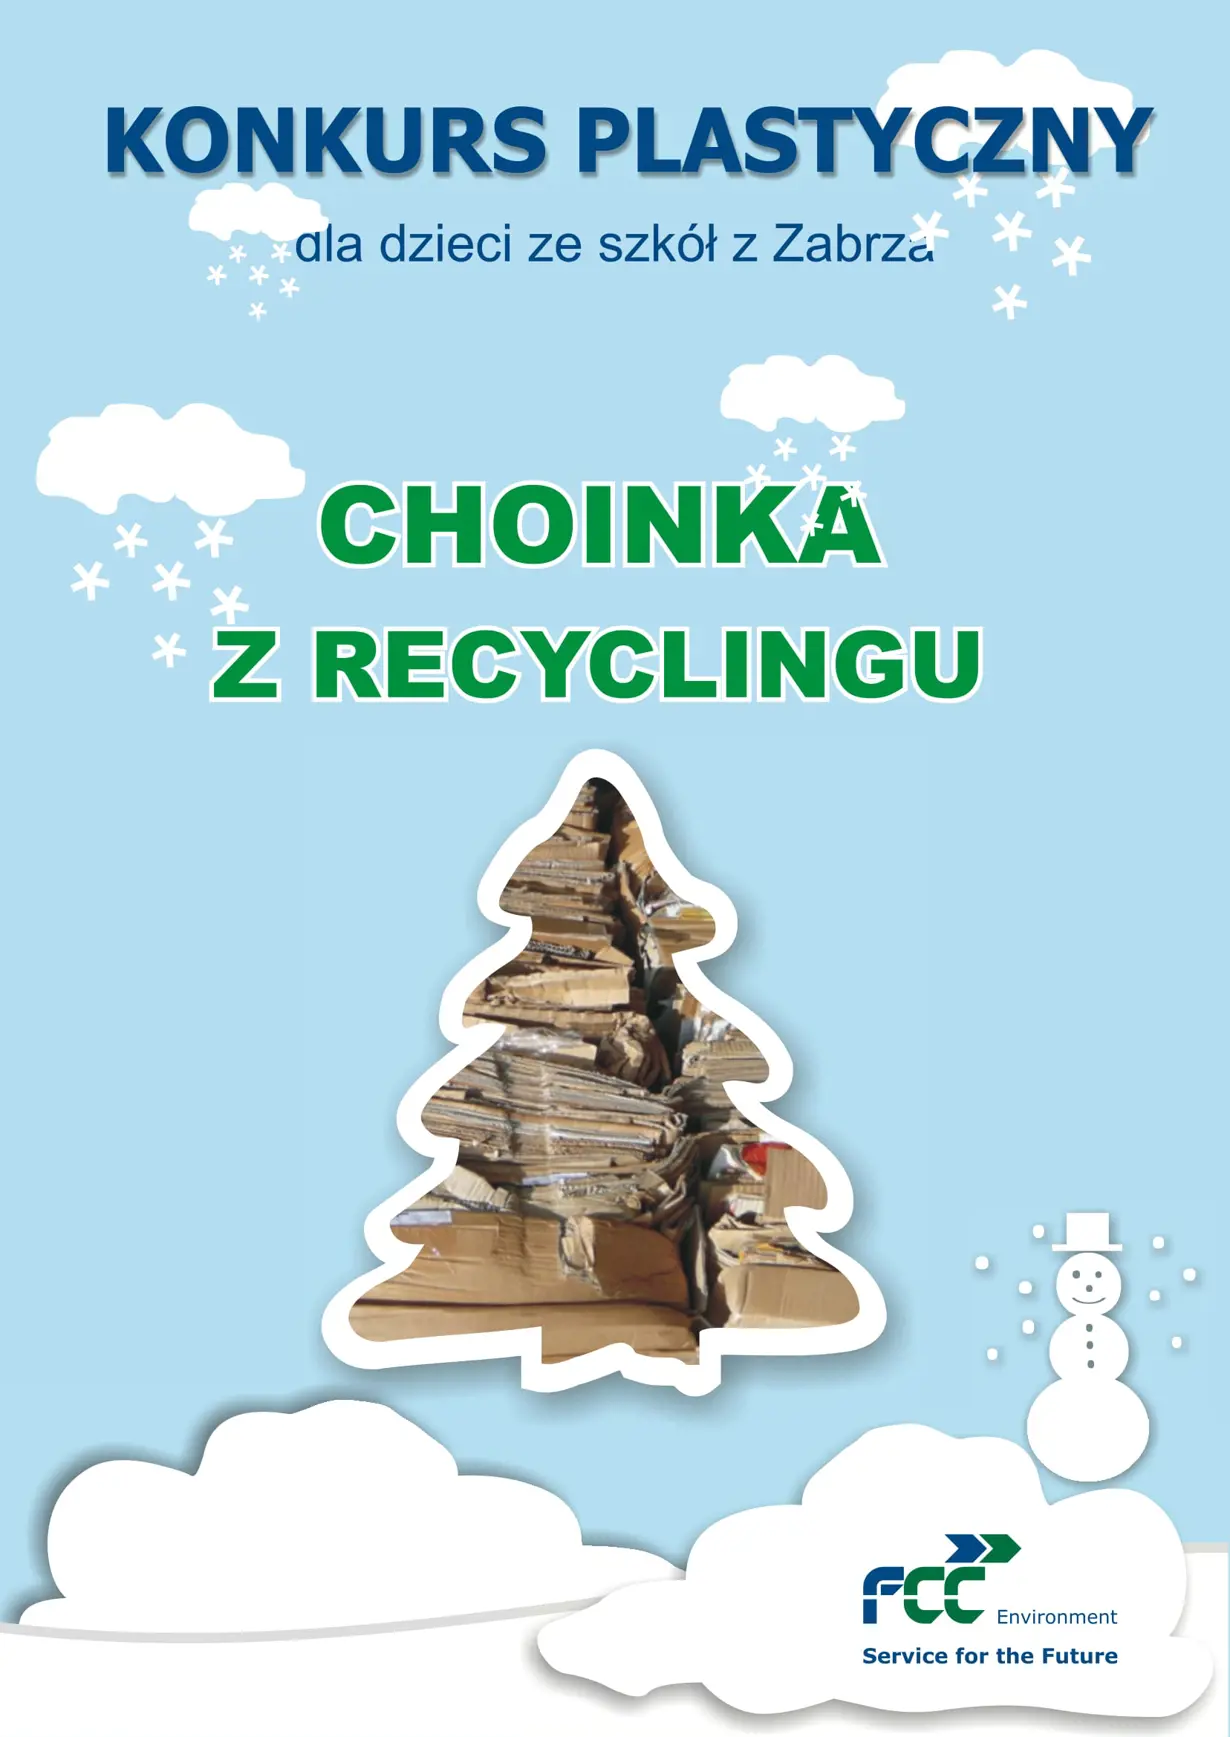 Konkurs "Choinka z recyclingu"